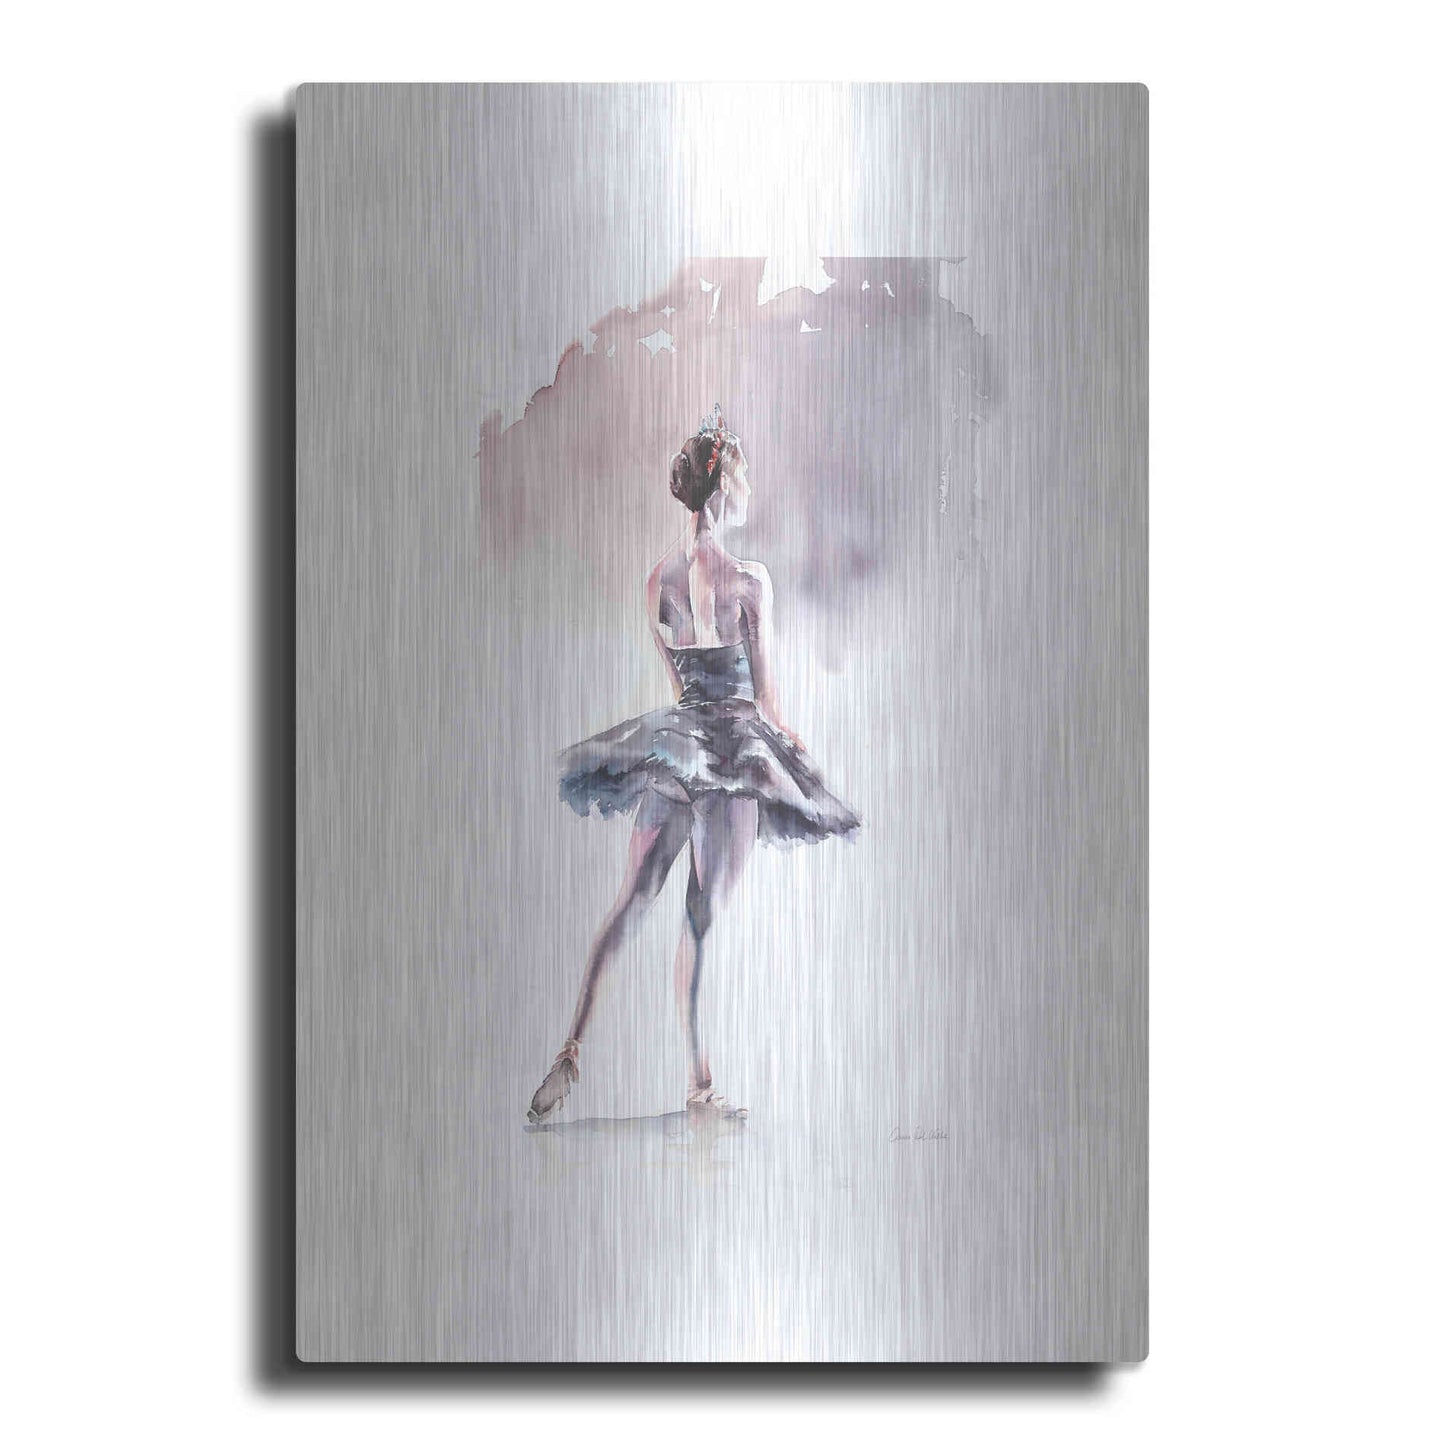 Luxe Metal Art 'Ballet I White Border' by Alan Majchrowicz, Metal Wall Art